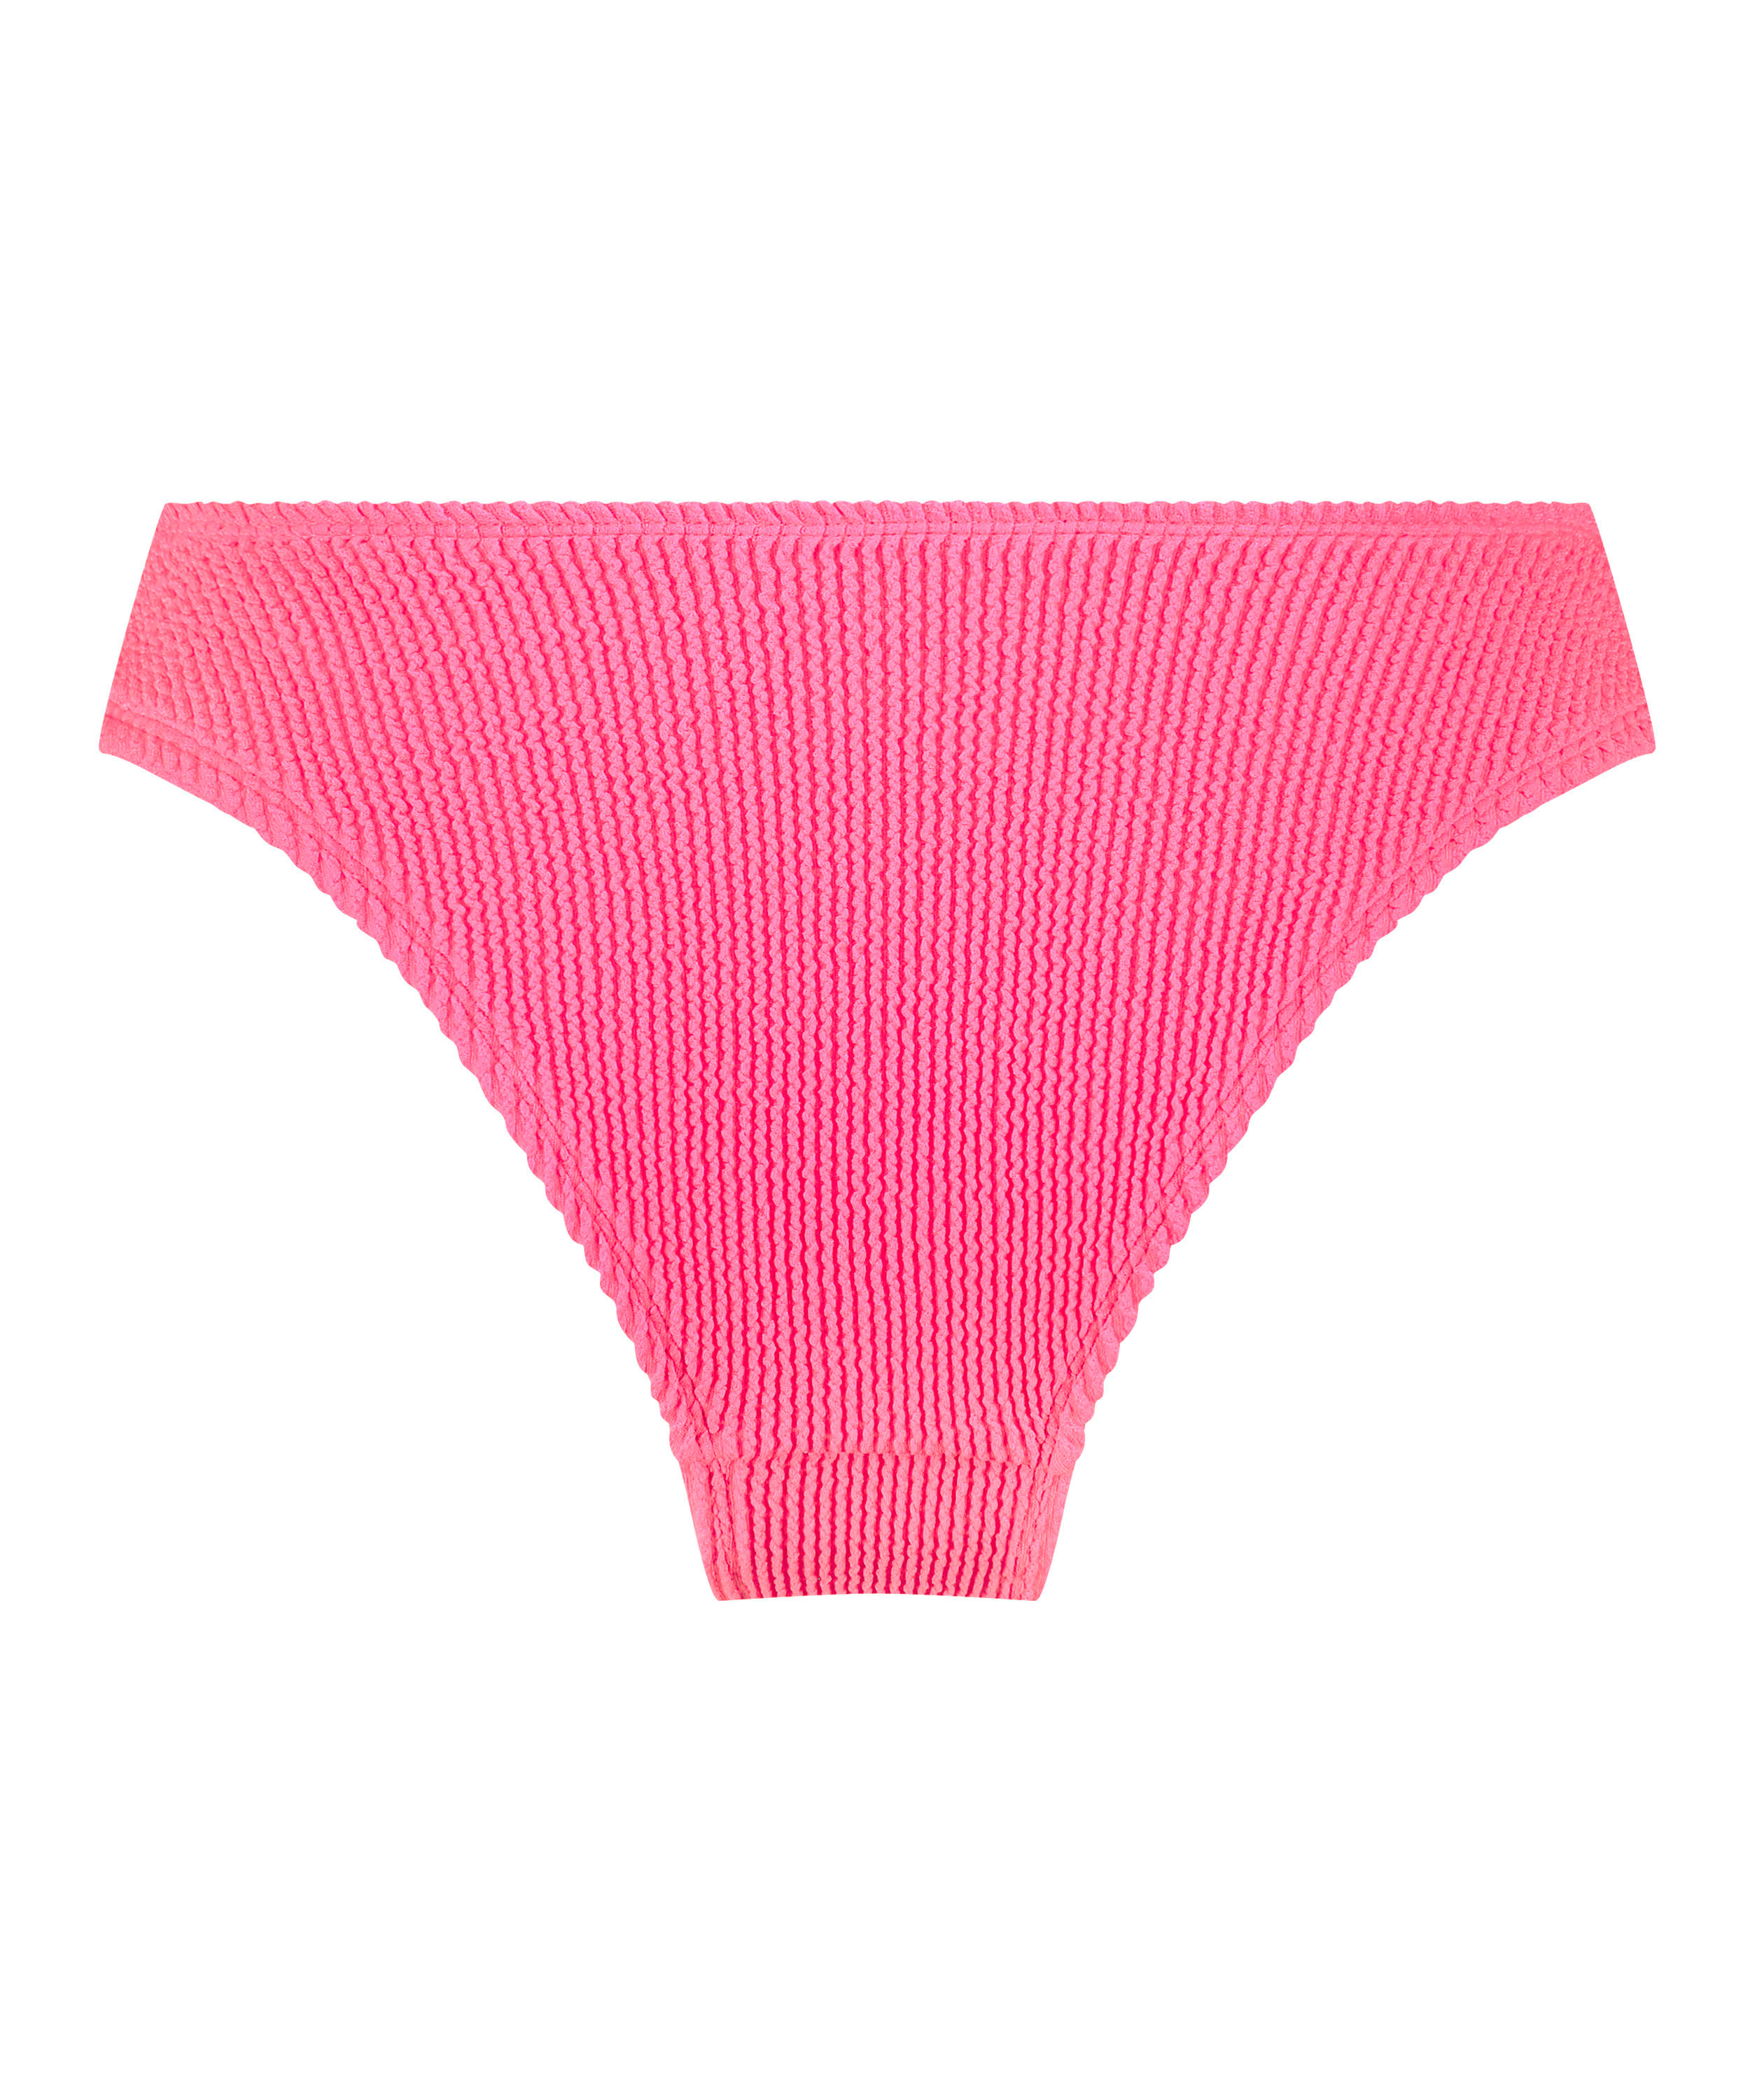 Crinkle High-Leg Bikini Bottoms, Pink, main